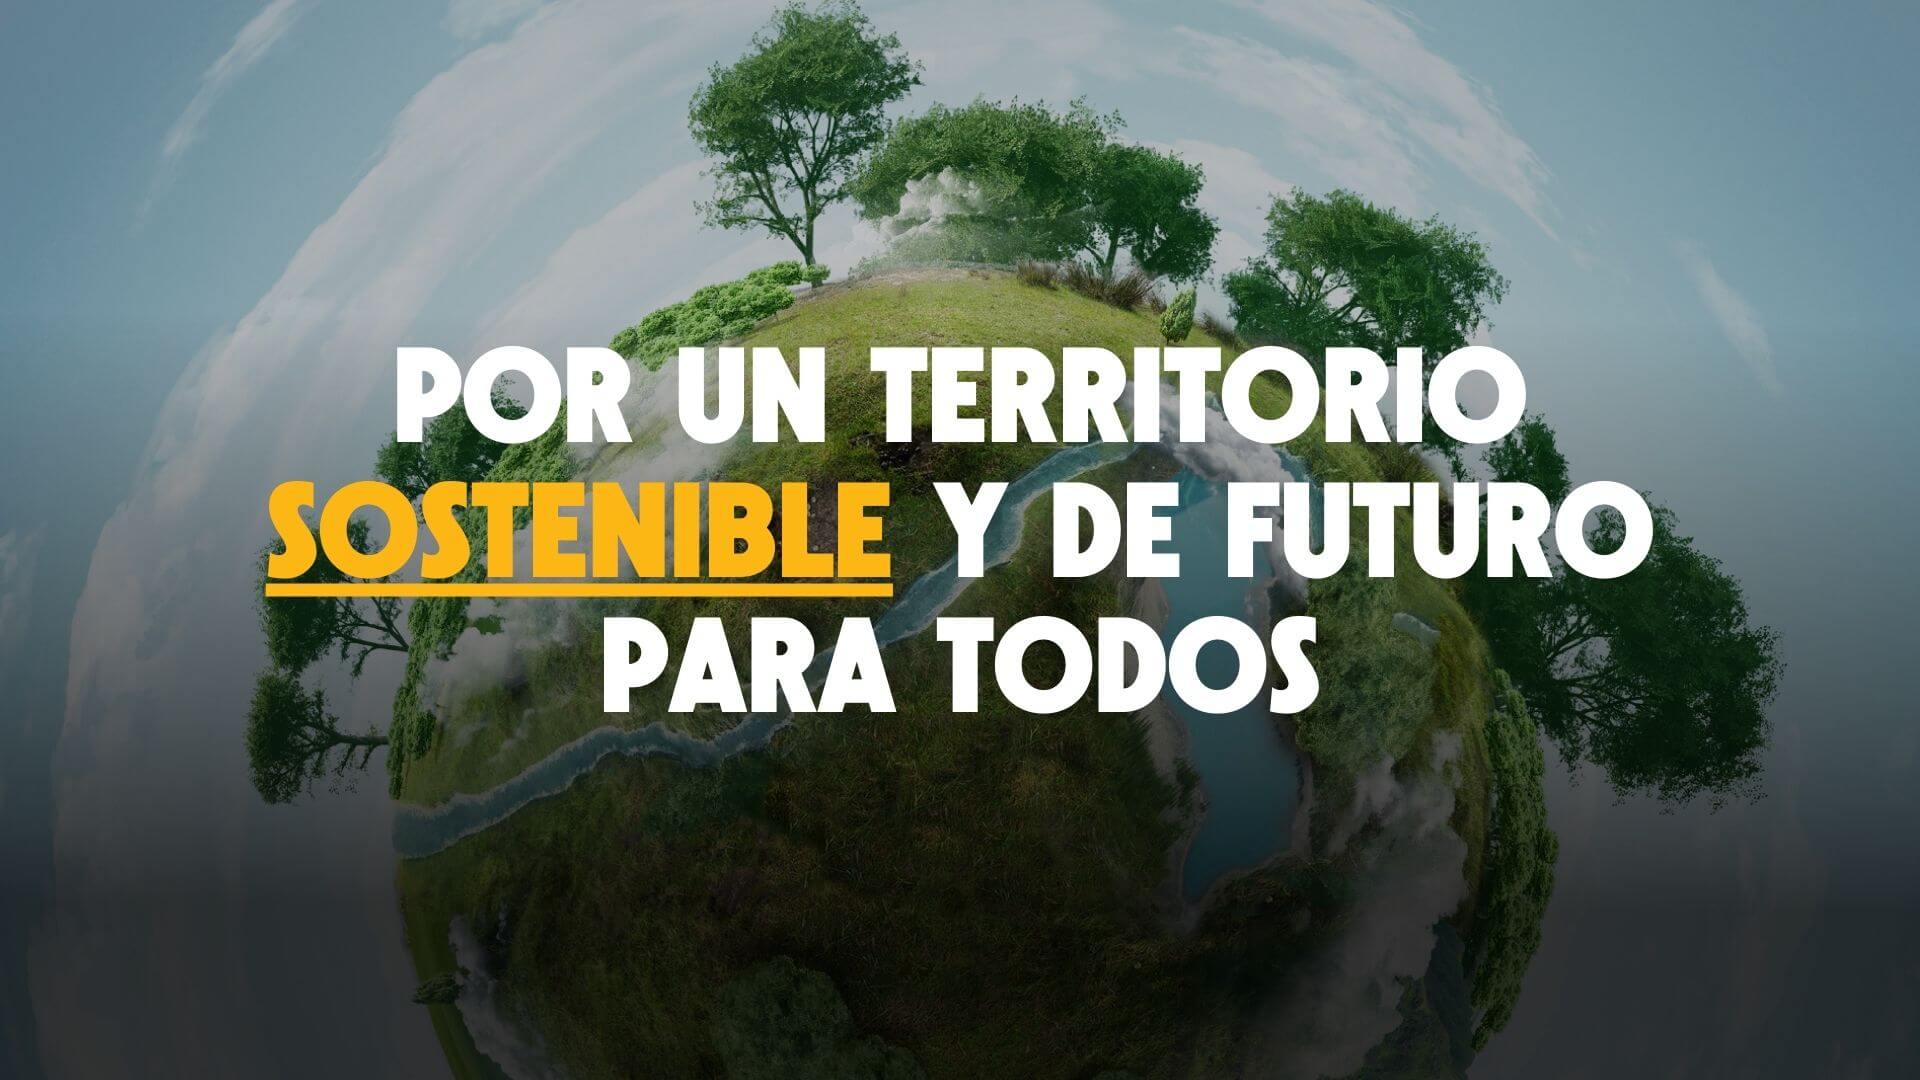 Por un territorio sostenible y de futuro para todos